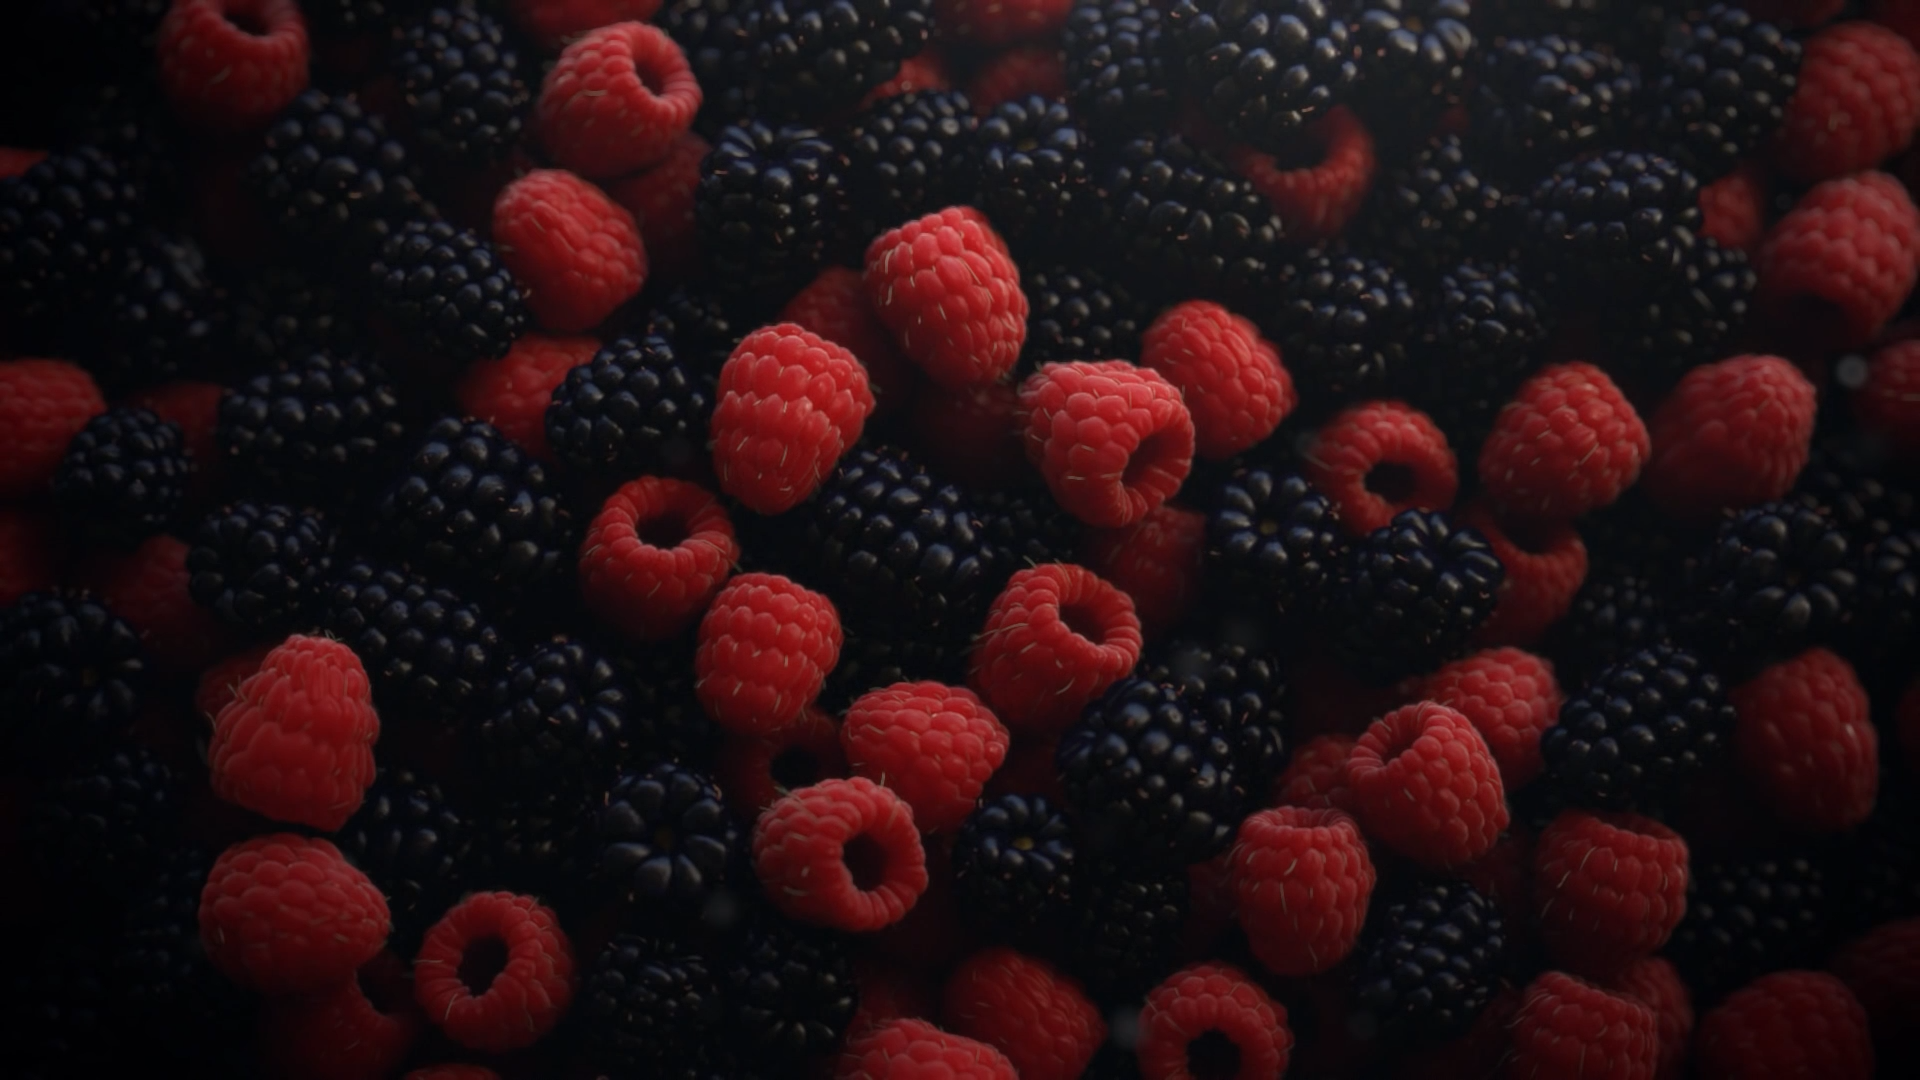 General 1920x1080 fruit raspberries food berries macro CGI